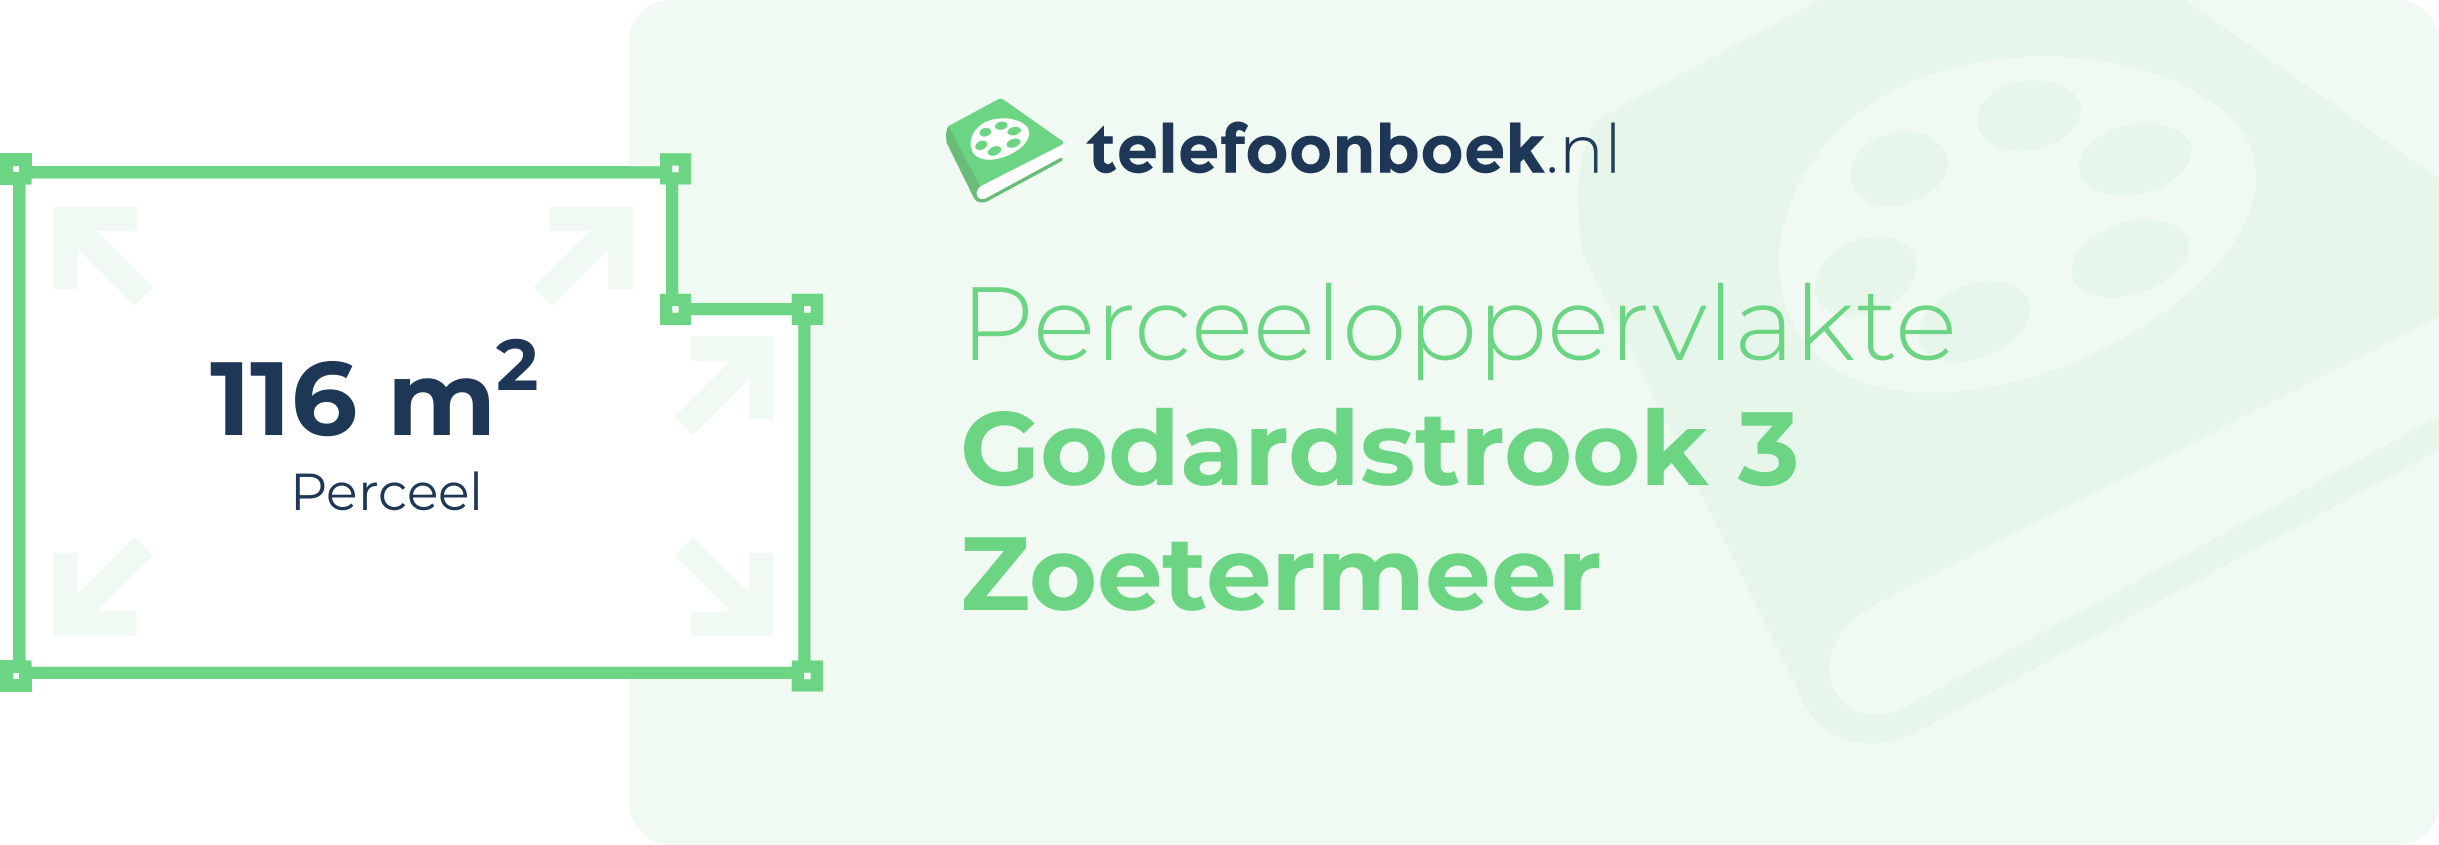 Perceeloppervlakte Godardstrook 3 Zoetermeer